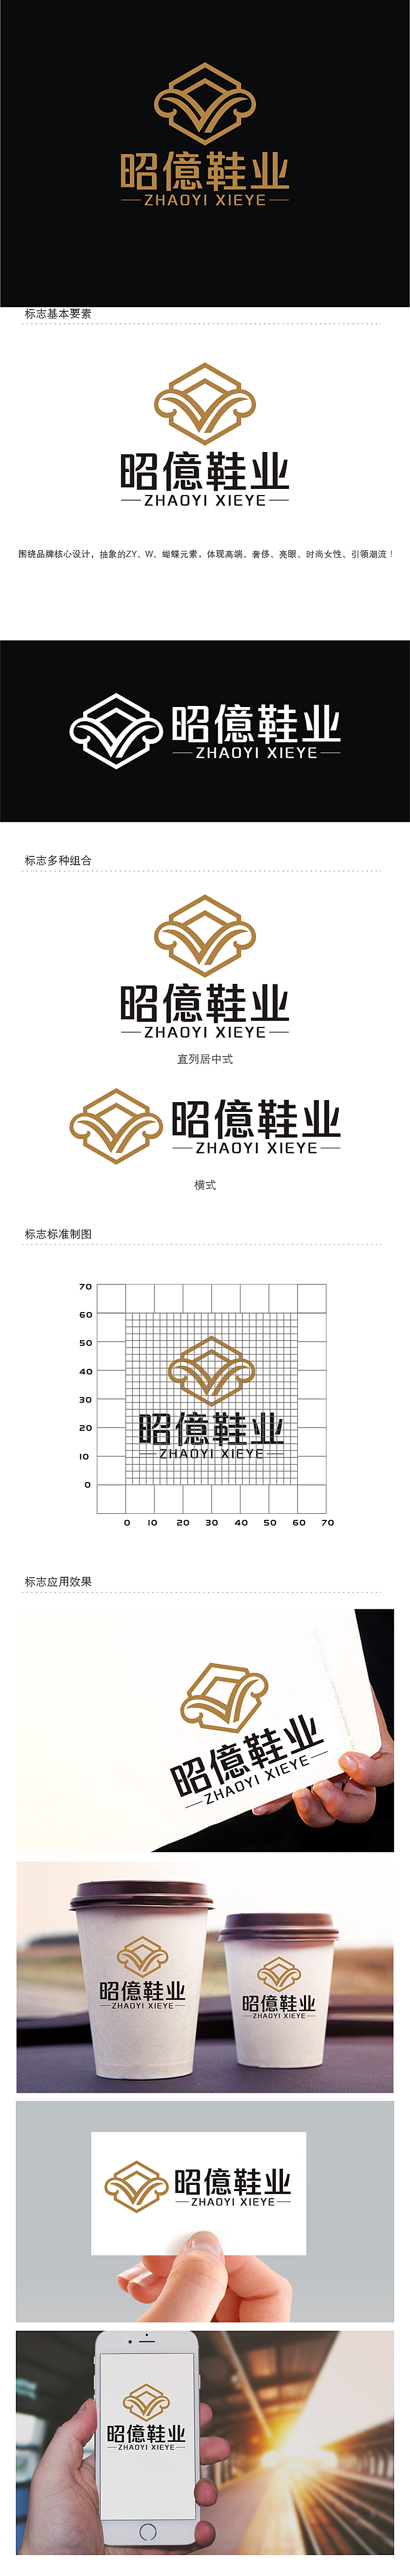 劳志飞的昭億鞋业logo设计